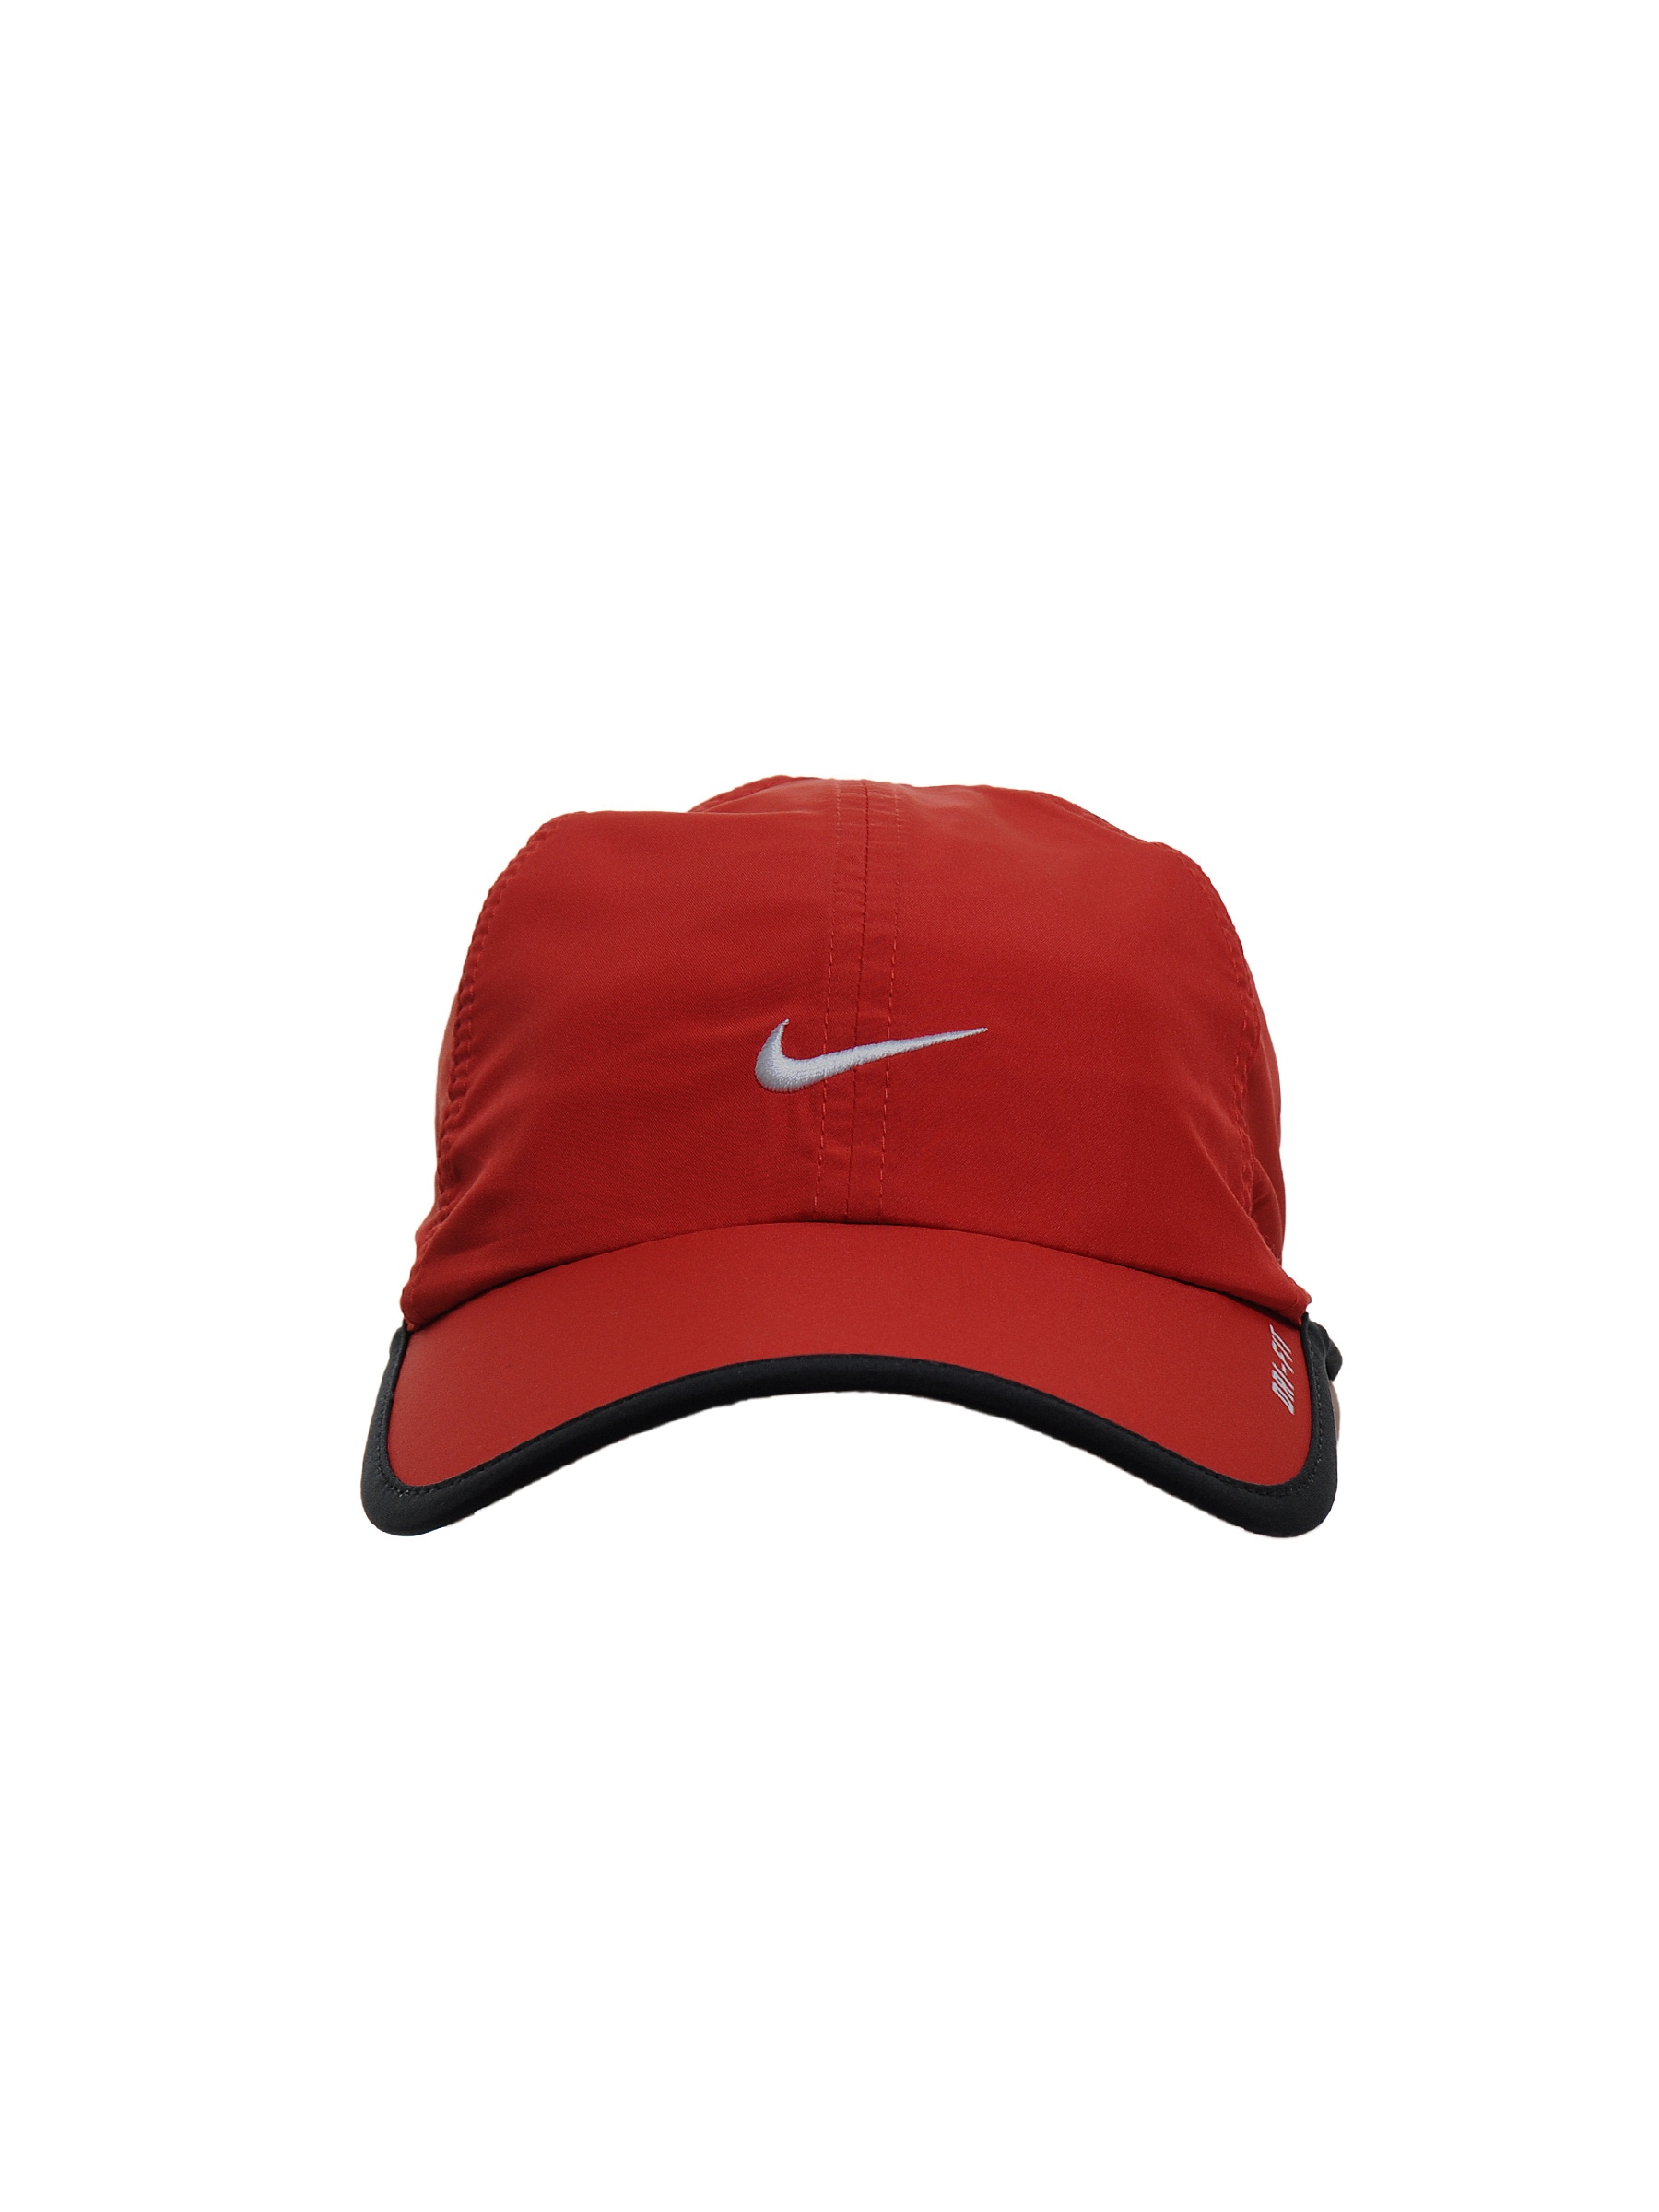 Nike Unisex Tennis Red Caps